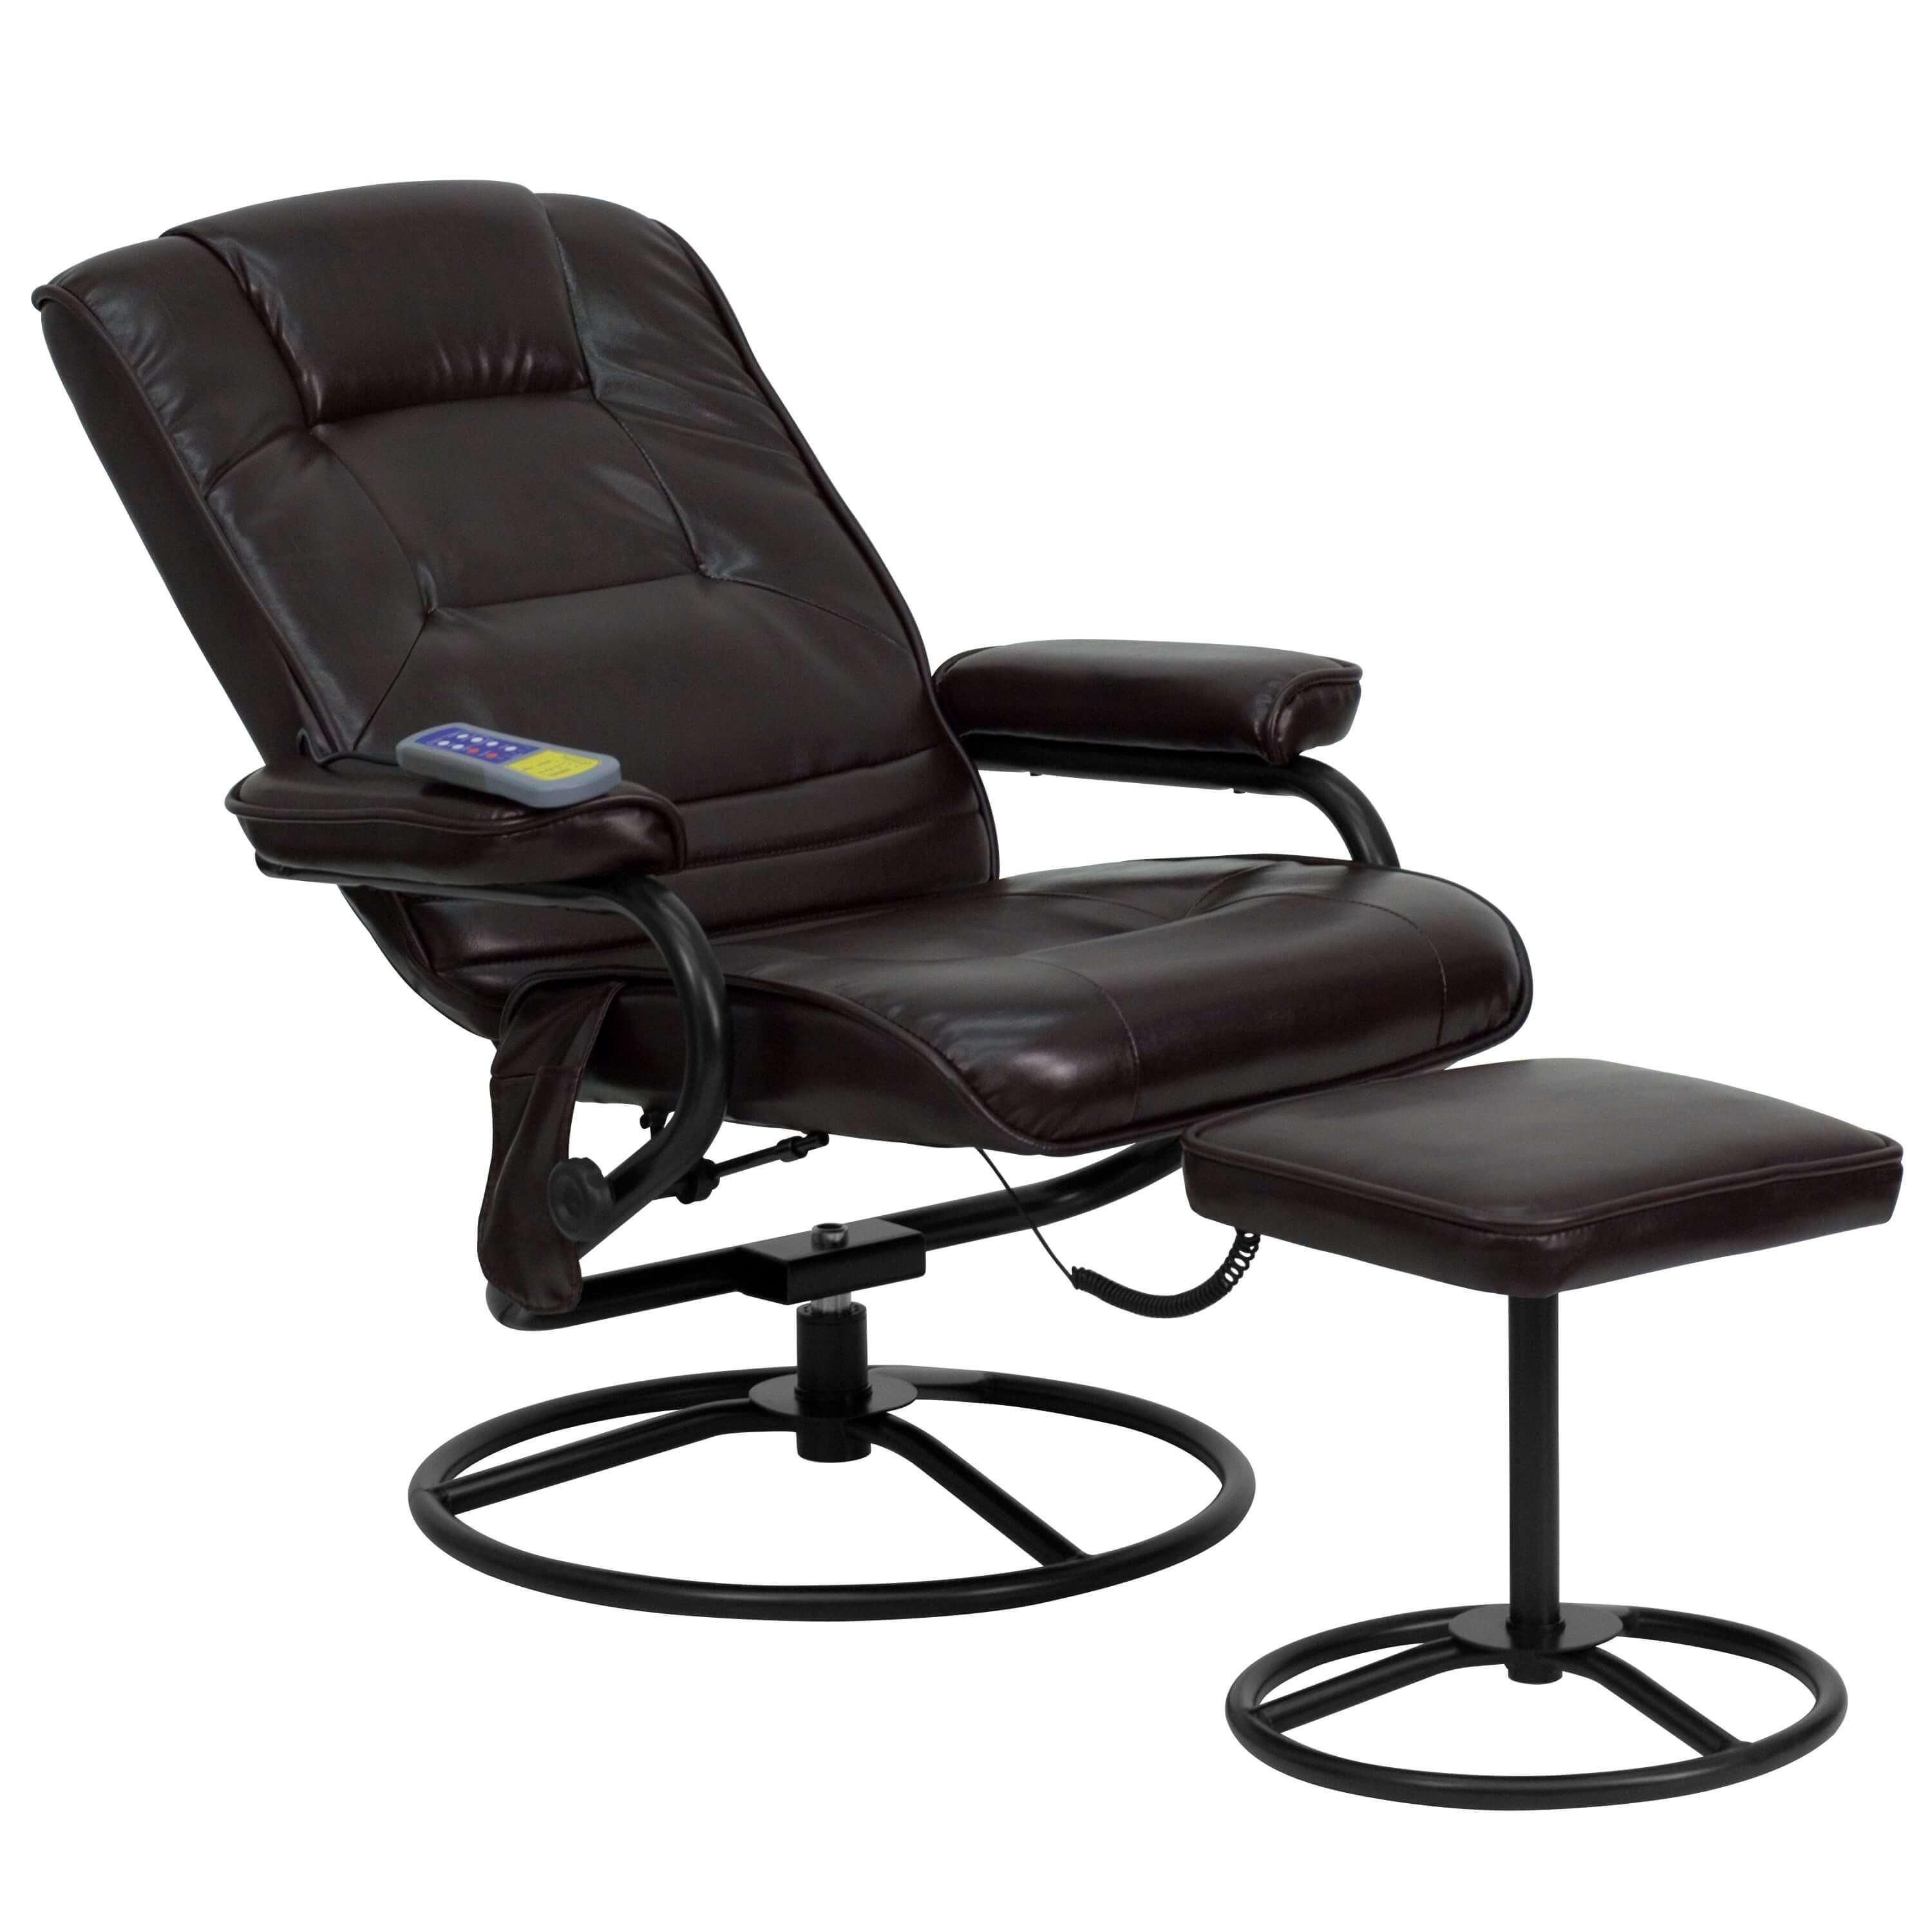 Massage chair recliner reclined view